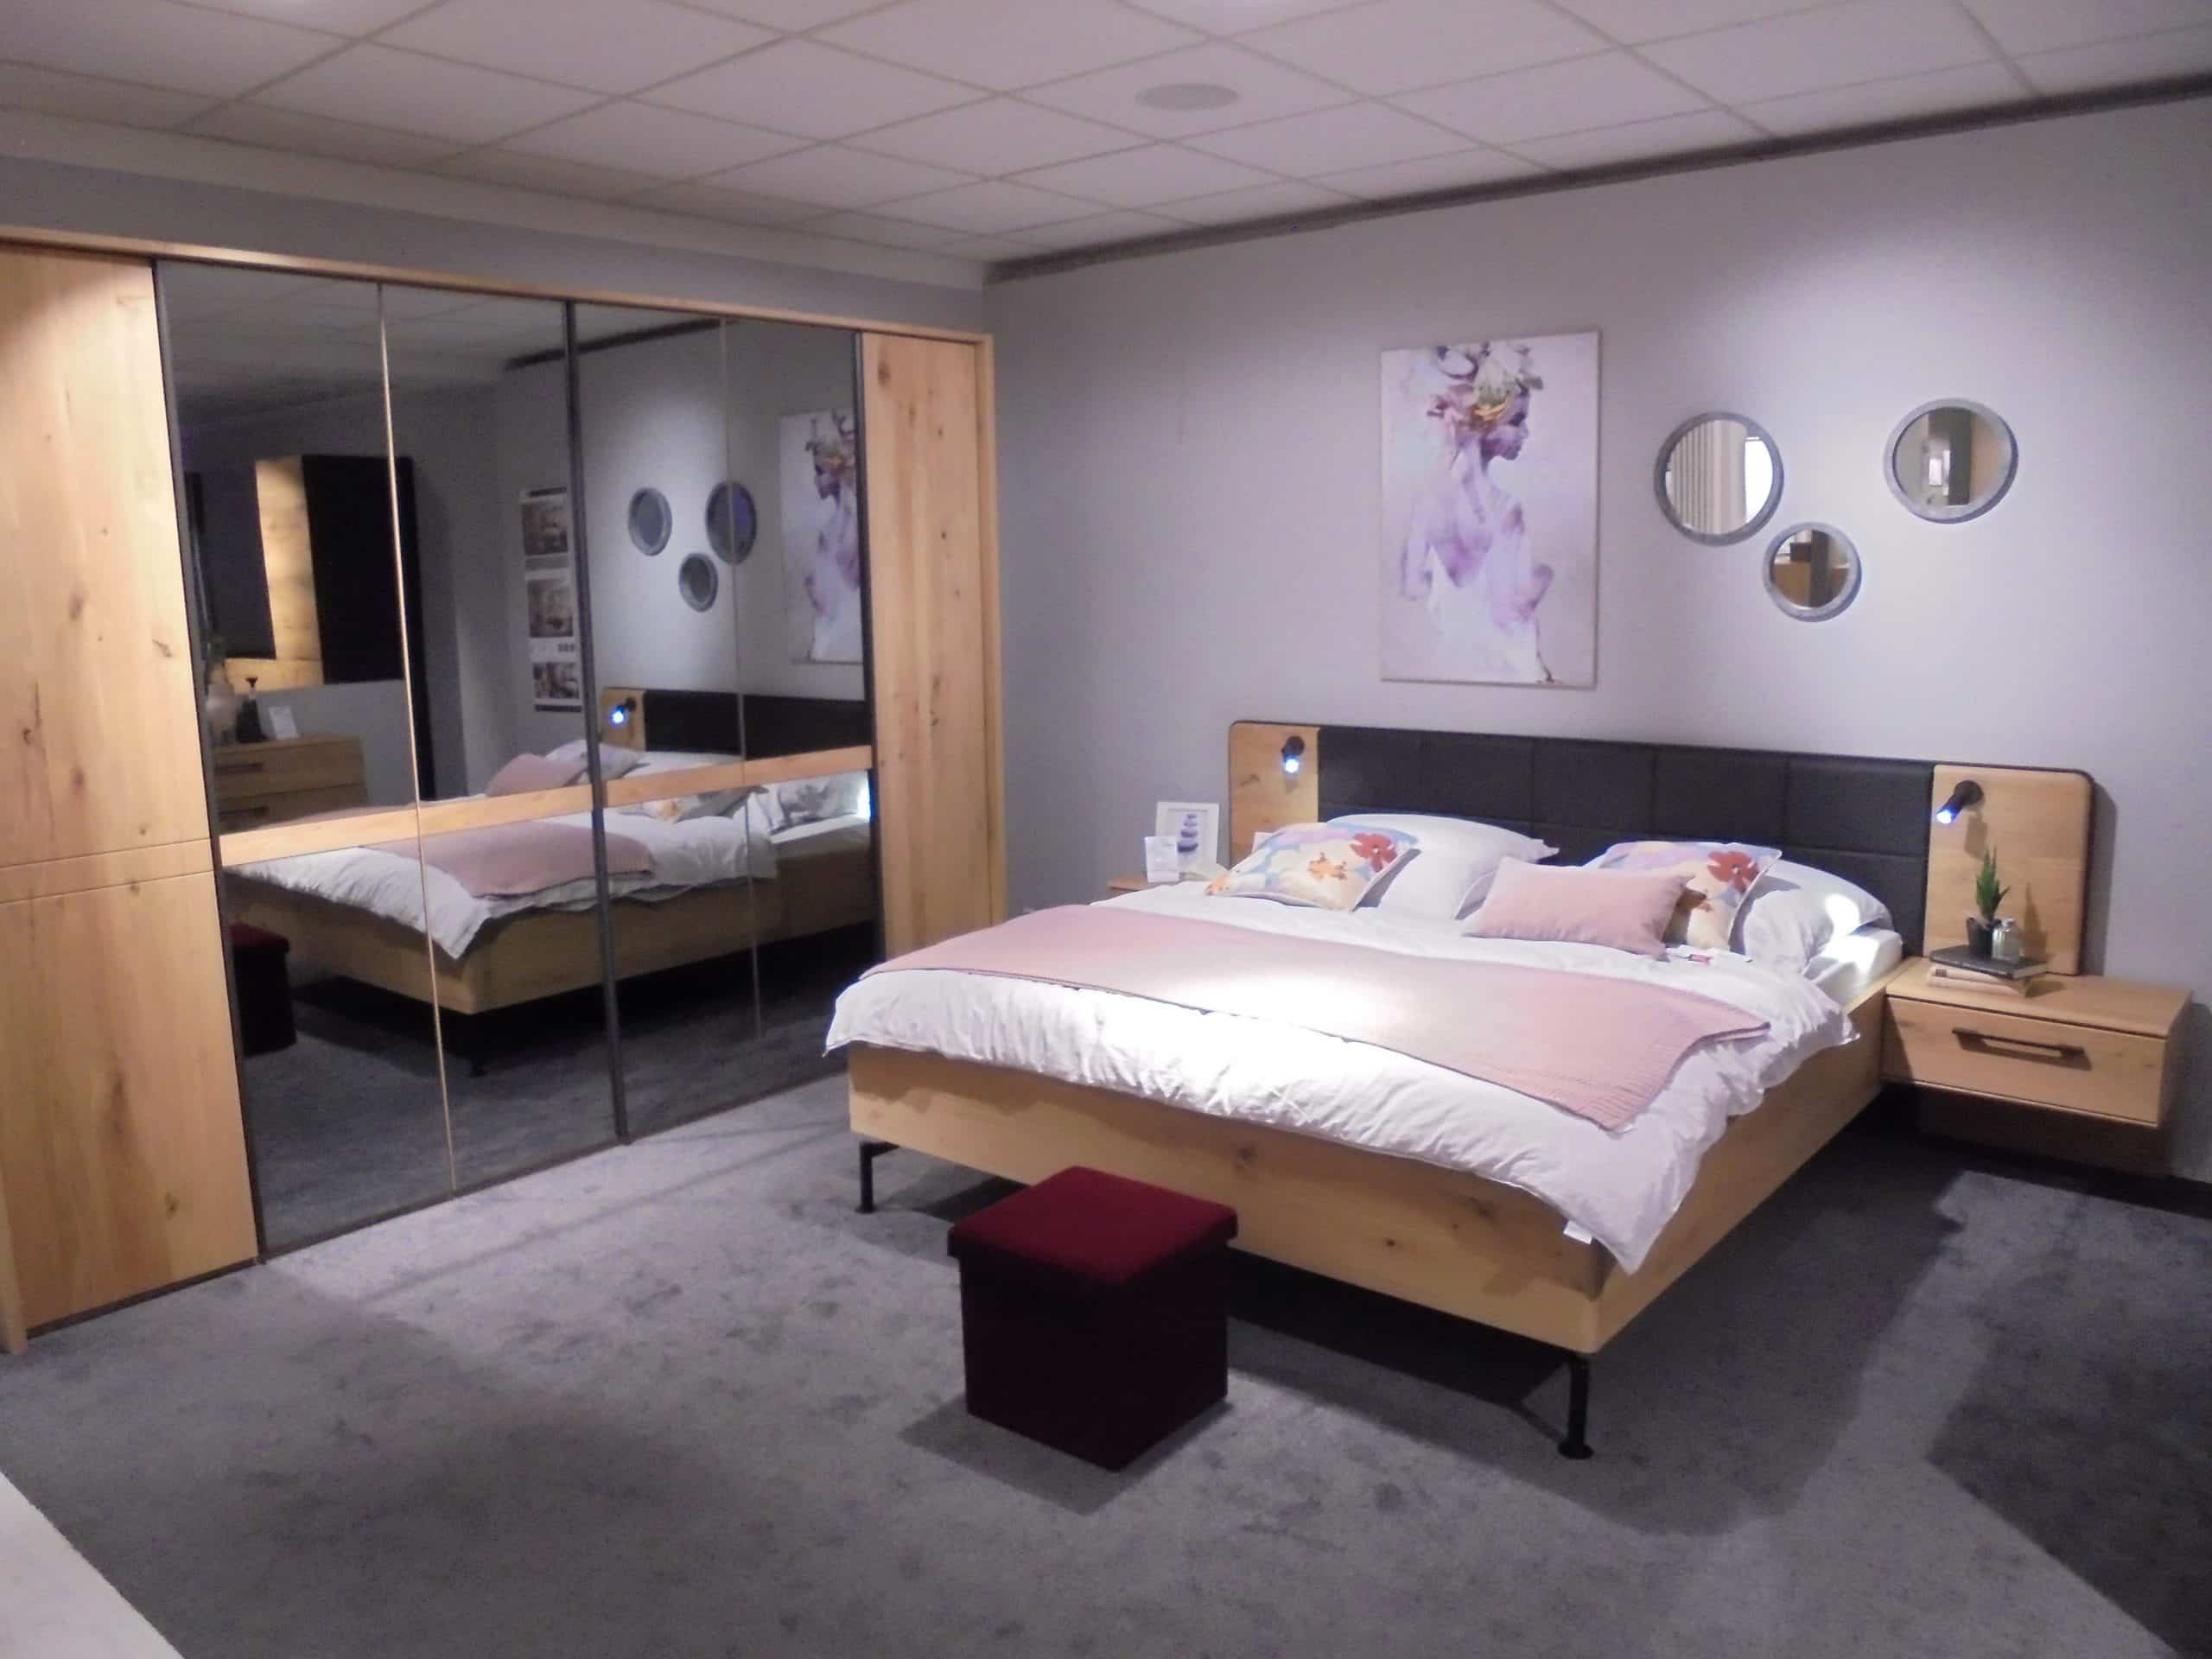 Schlafzimmer Marissa in Wildeiche natur teilmassiv bei Möbelhaus Thiex im Abverkauf über 31 % reduziert.